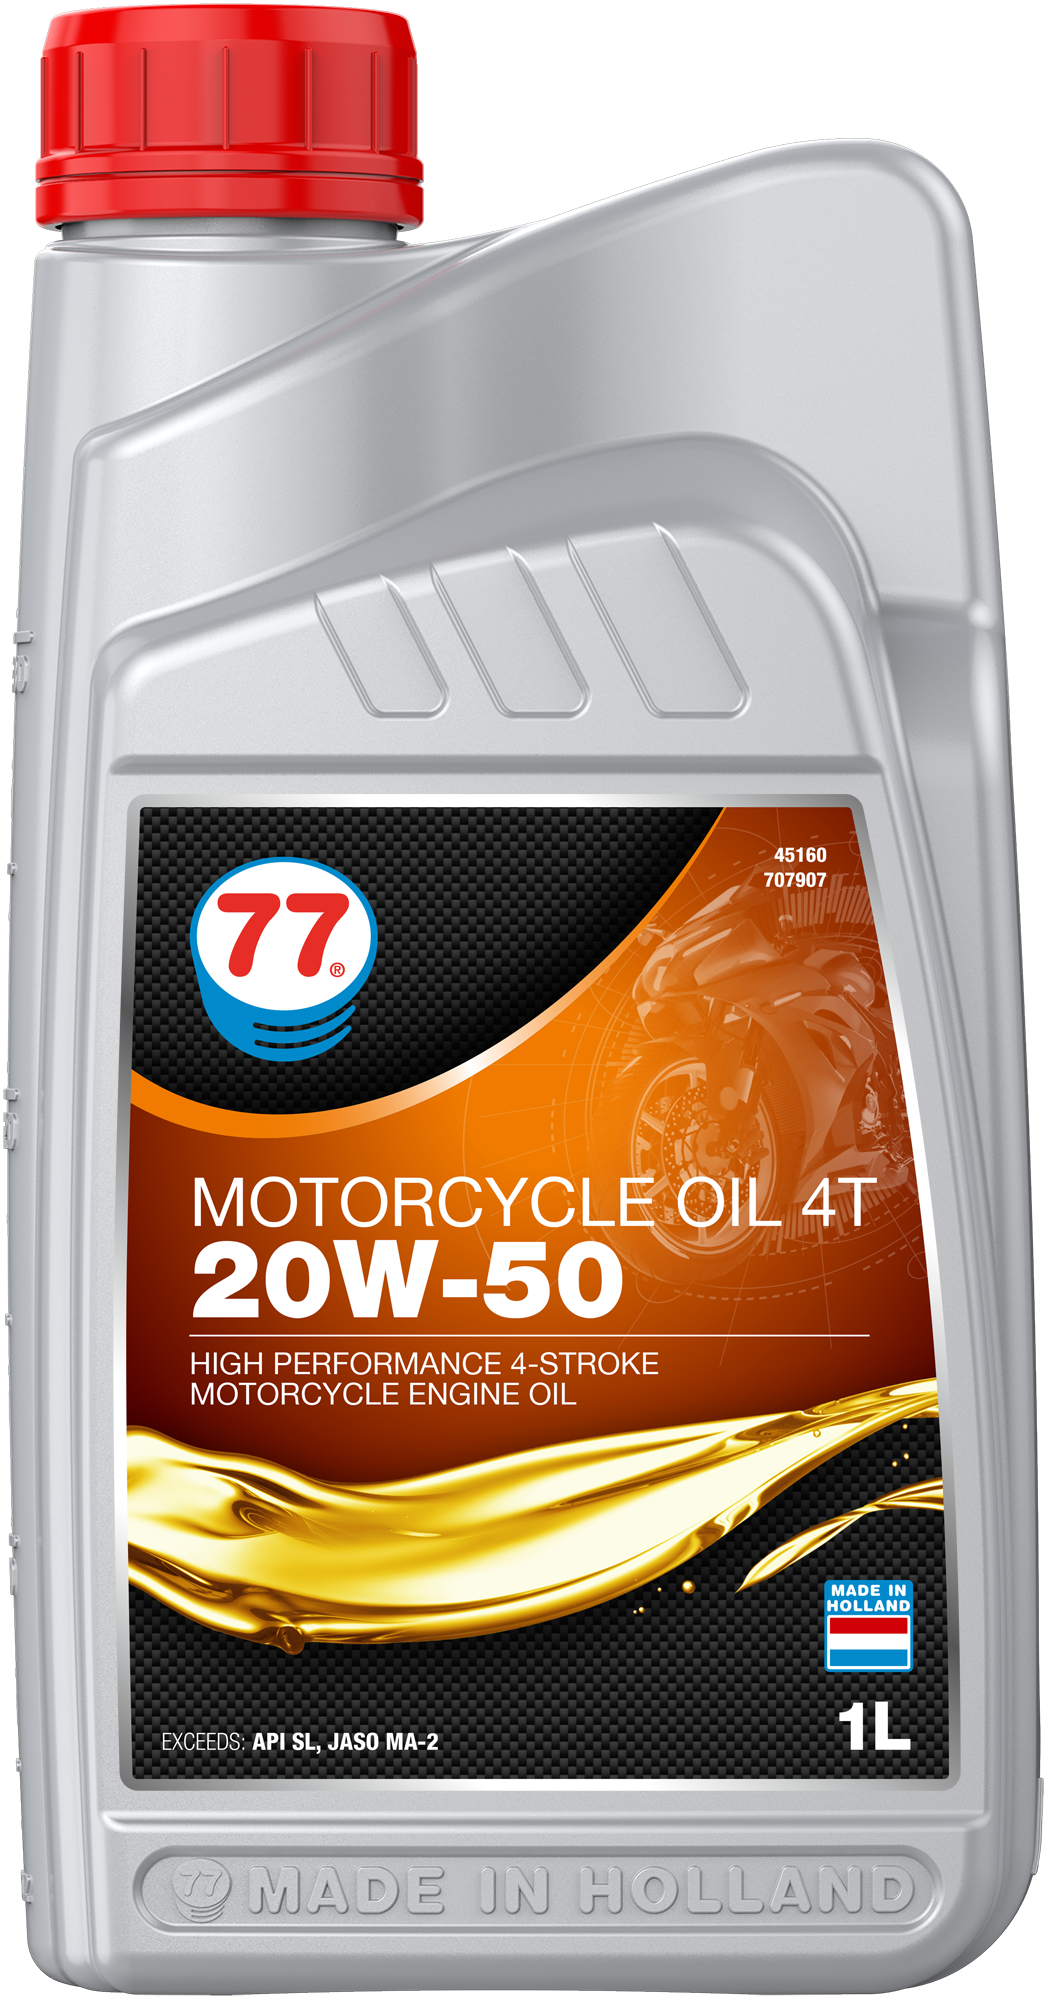 4516-1 Motorcycle Oil 4T 20W-50 is een krachtige minerale motorolie speciaal ontwikkeld voor gebruik in lucht-, olie- en watergekoelde 4-takt motorfietsen om een uitstekende bescherming te bieden tegen motor, versnellingsbak en natte koppelingen en zorgt voor de hoogst mogelijke betrouwbaarheid, zelfs onder de zwaarste bedrijfsomstandigheden.